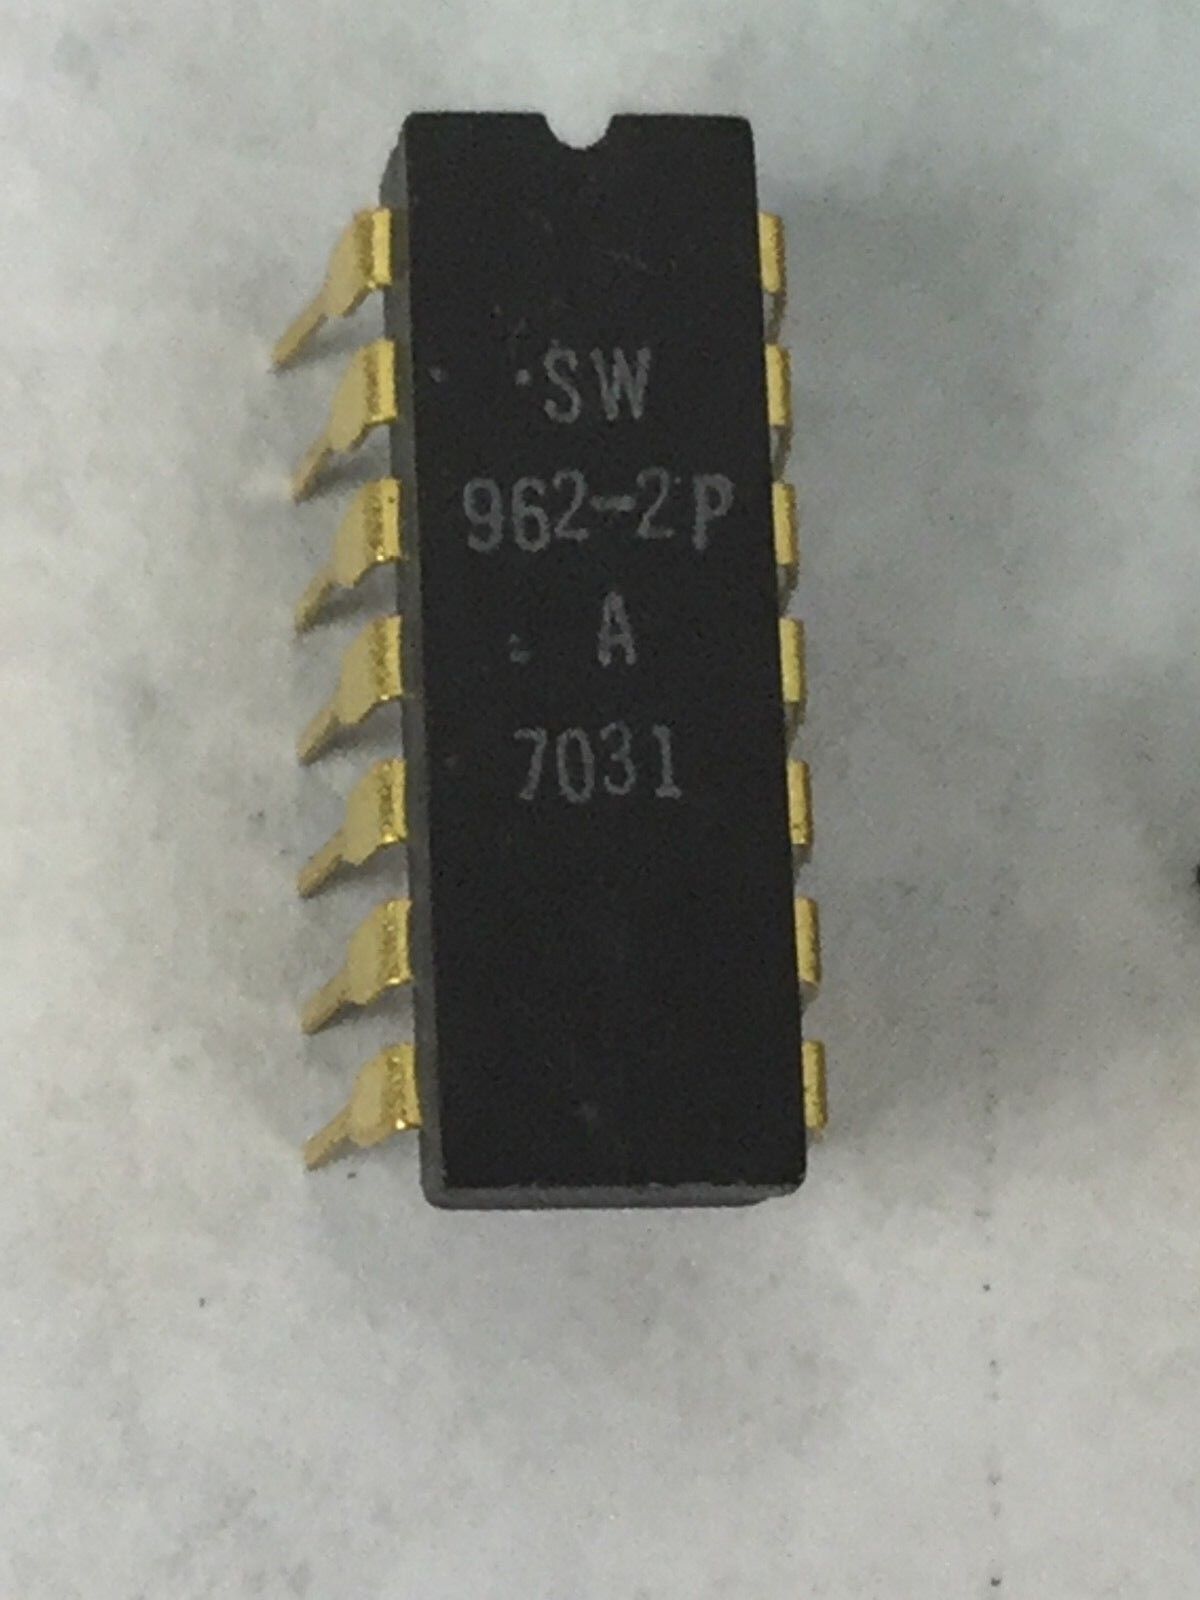 SW 962-2P STEWART WARNER  14 Pin Gold Dip  Lot of 3